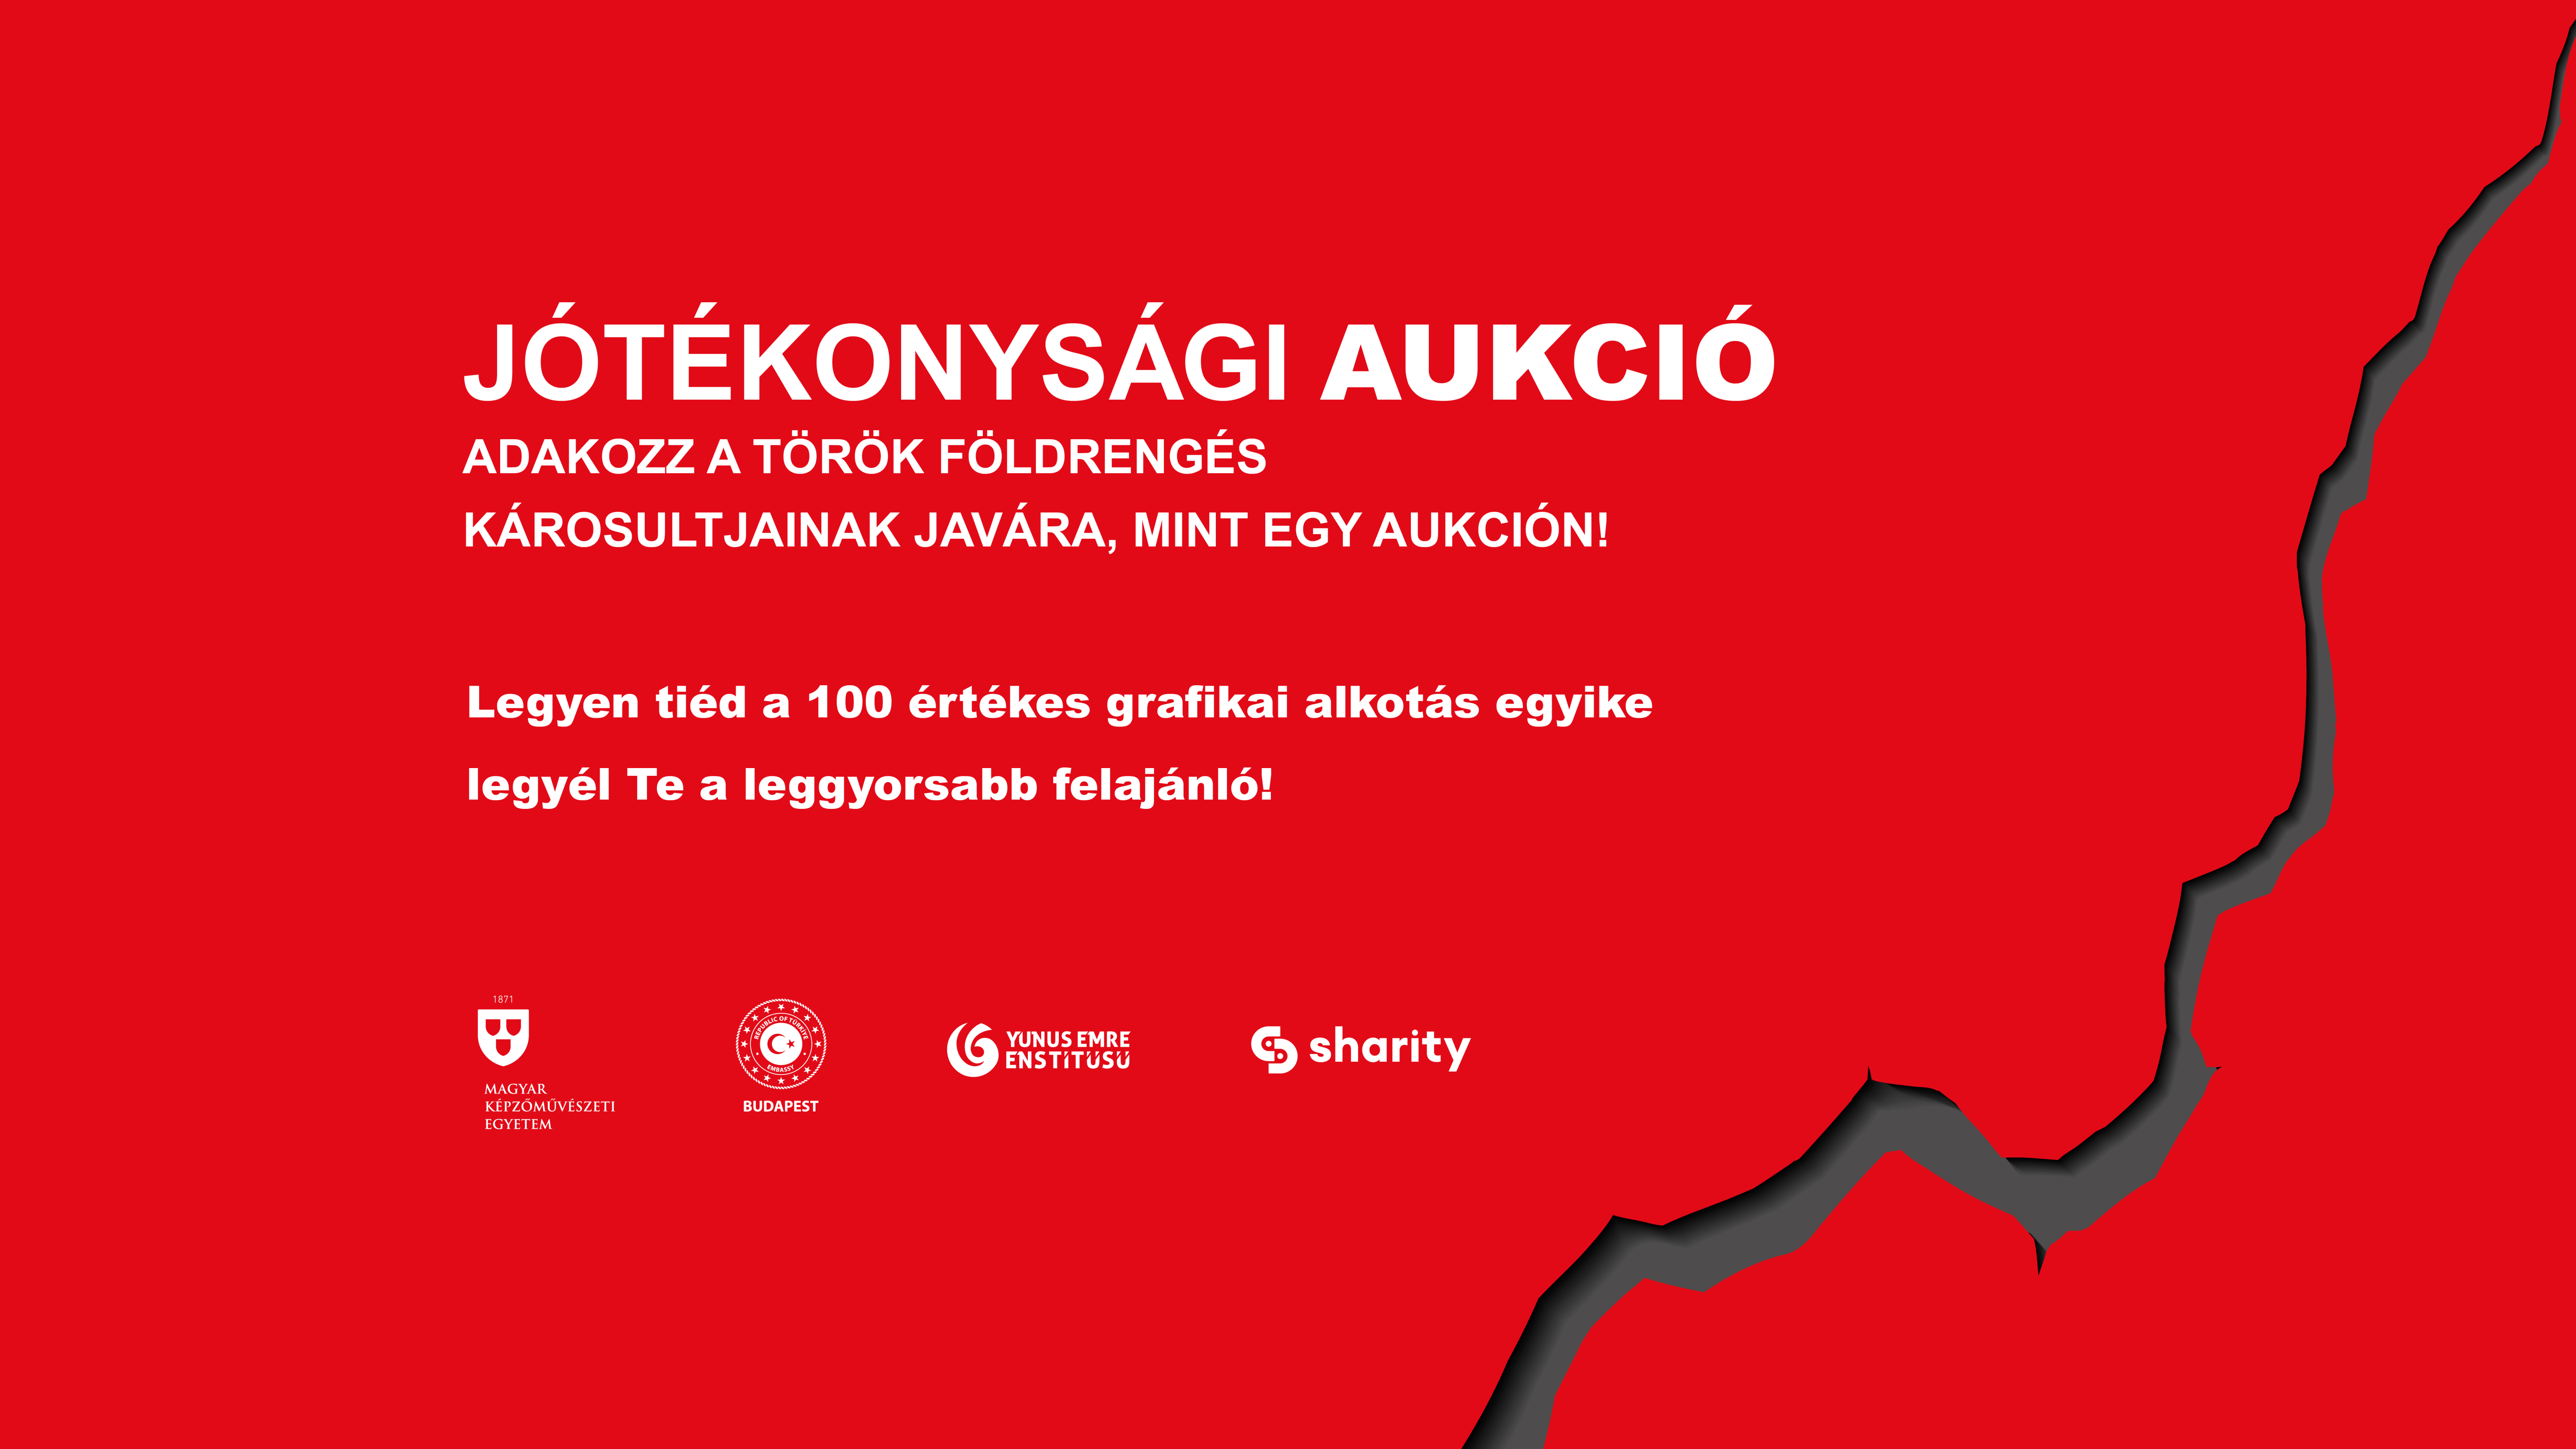 A Képzőművészeti Egyetem jótékonysági adományozást szervez a török földrengés károsultjai javára